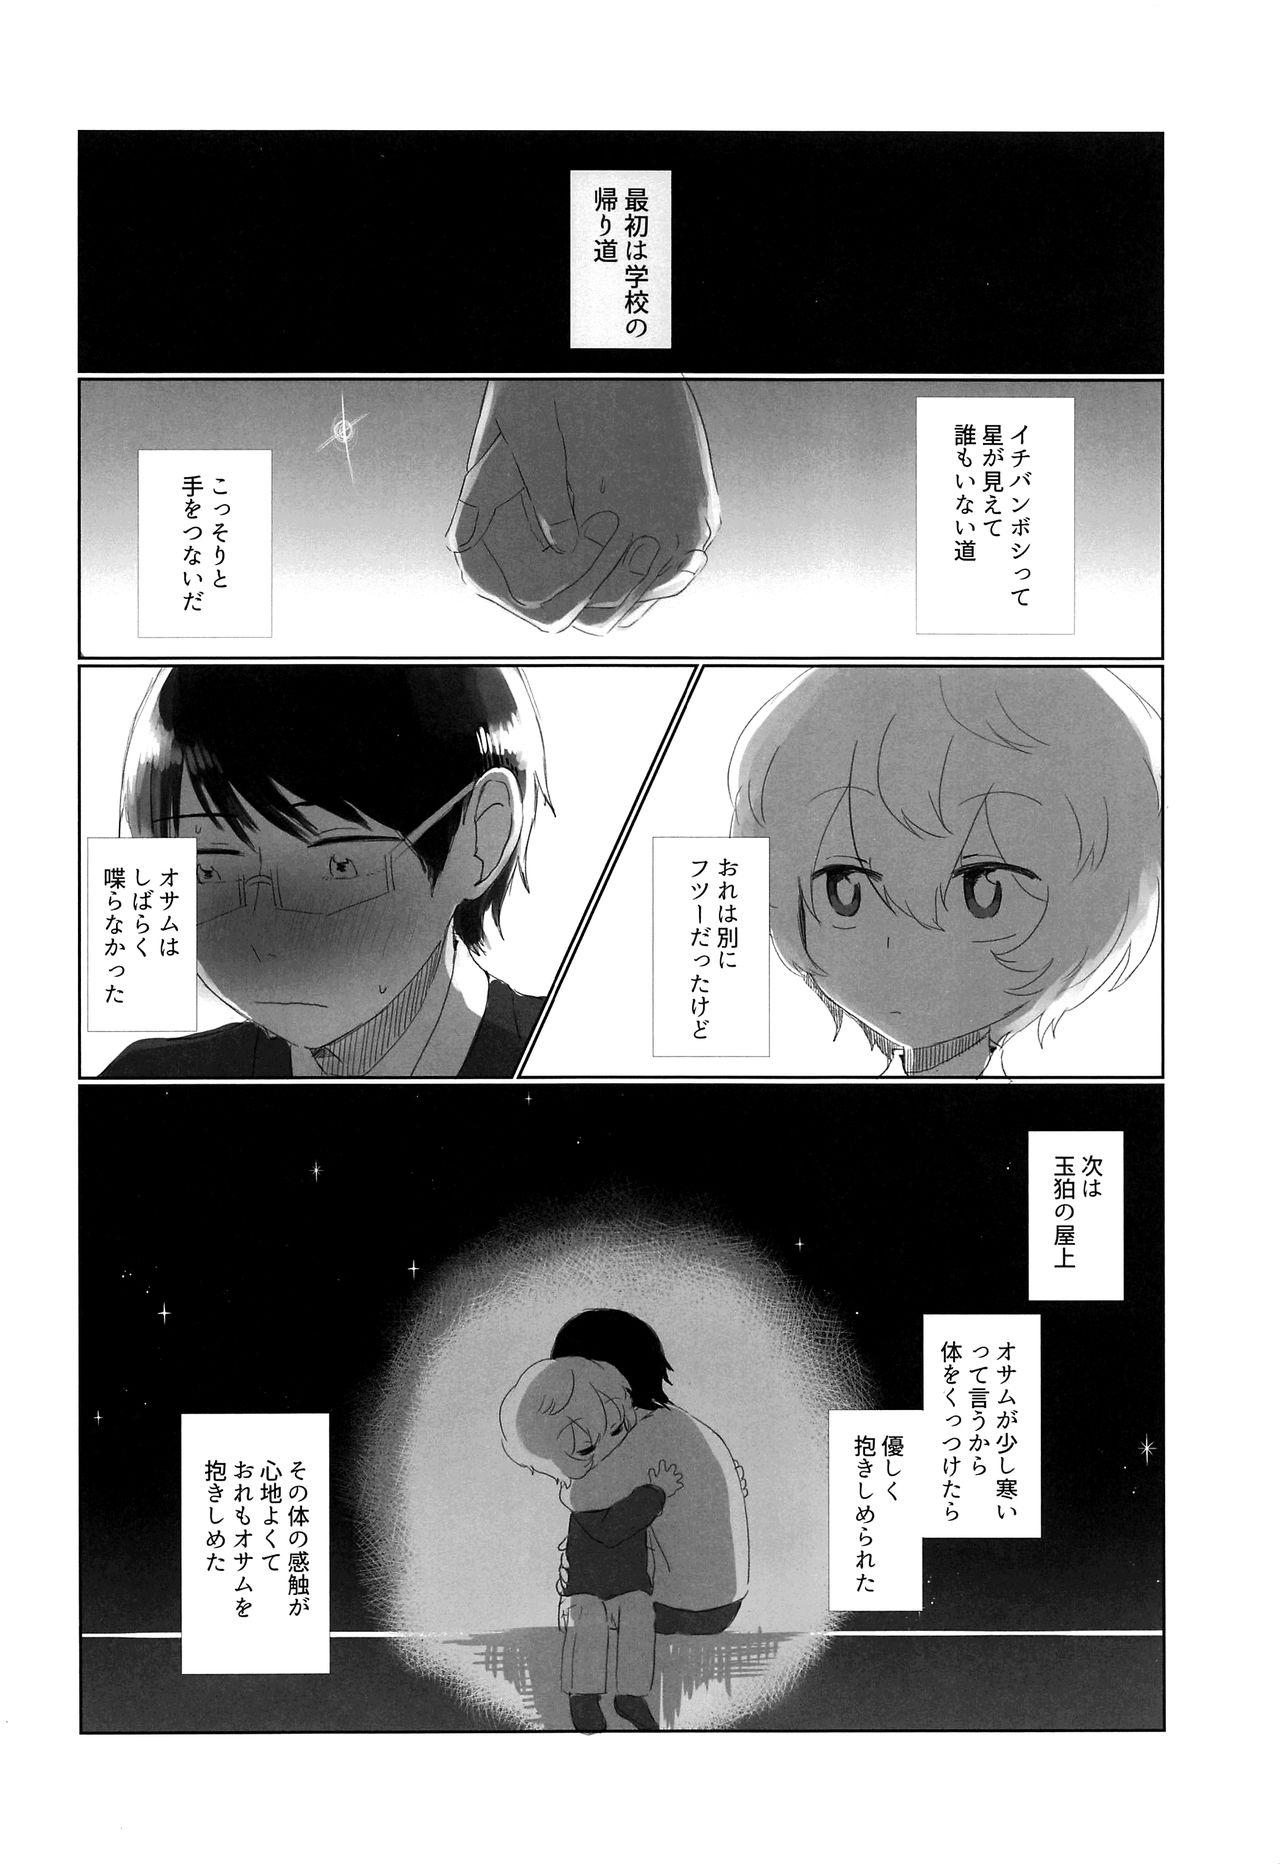 Stepsister Hajimete o Kimi ni Ageru. - World trigger Chile - Page 3